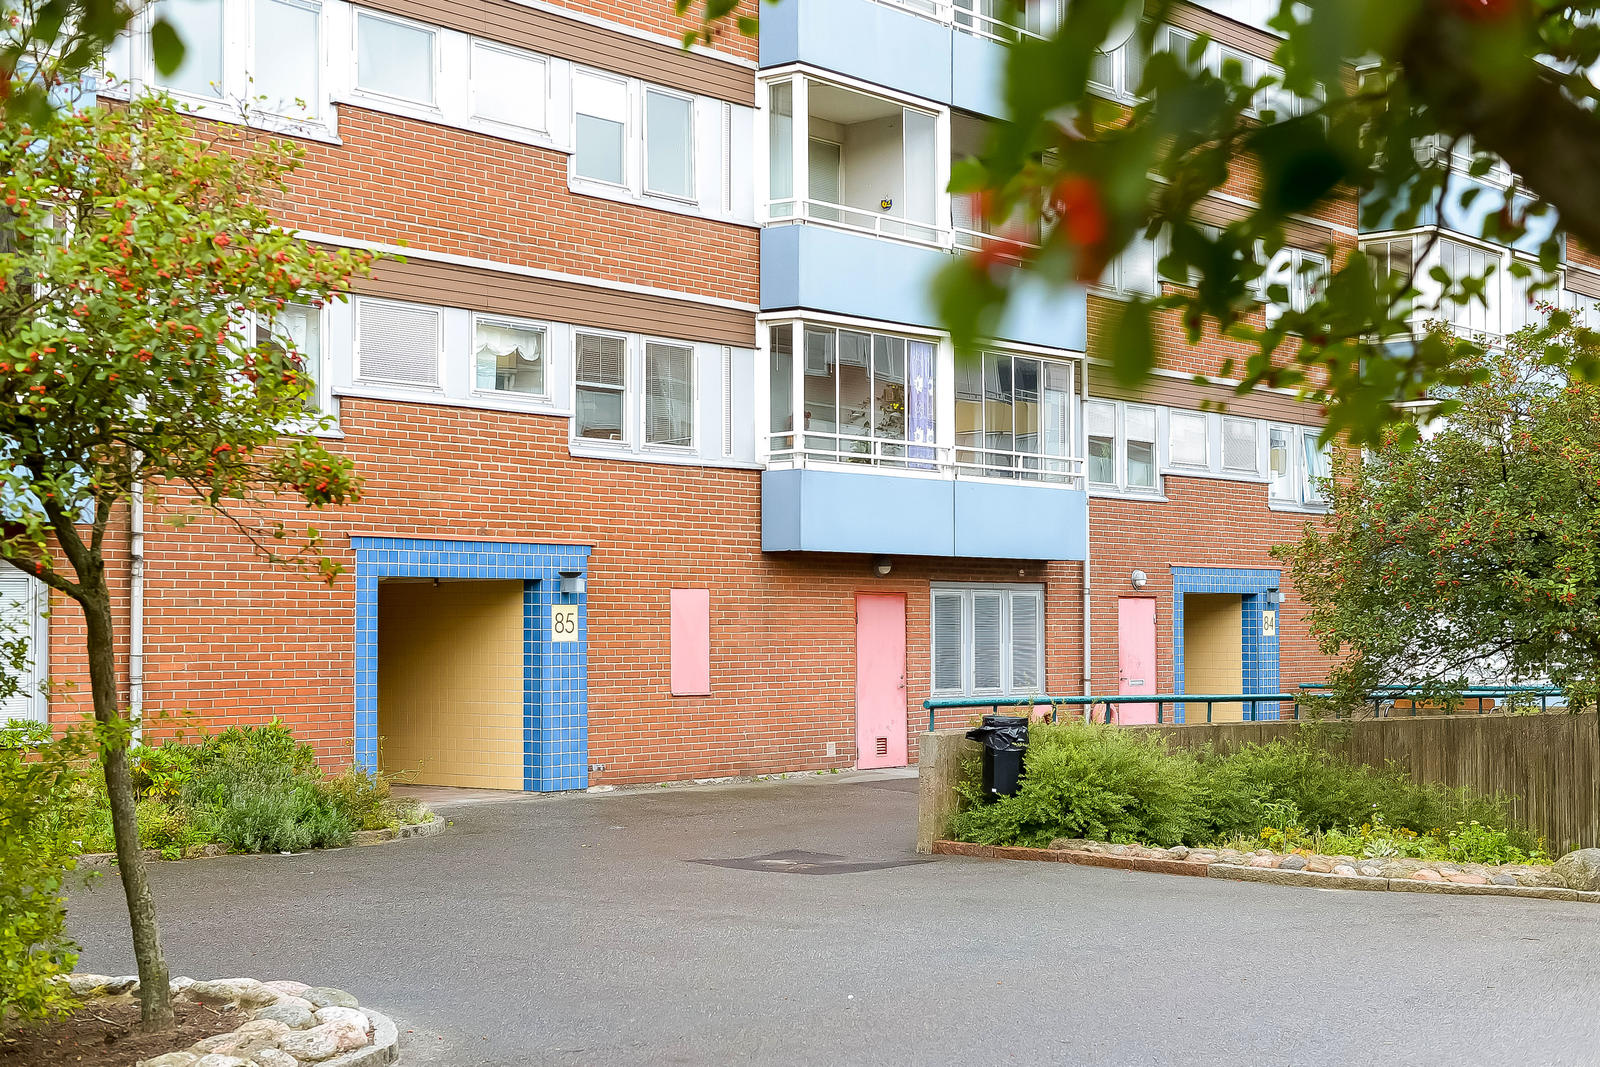 Bostadsrätt i Ängås, Västra Frölunda, Västra Götaland, Göteborg, Topasgatan 85